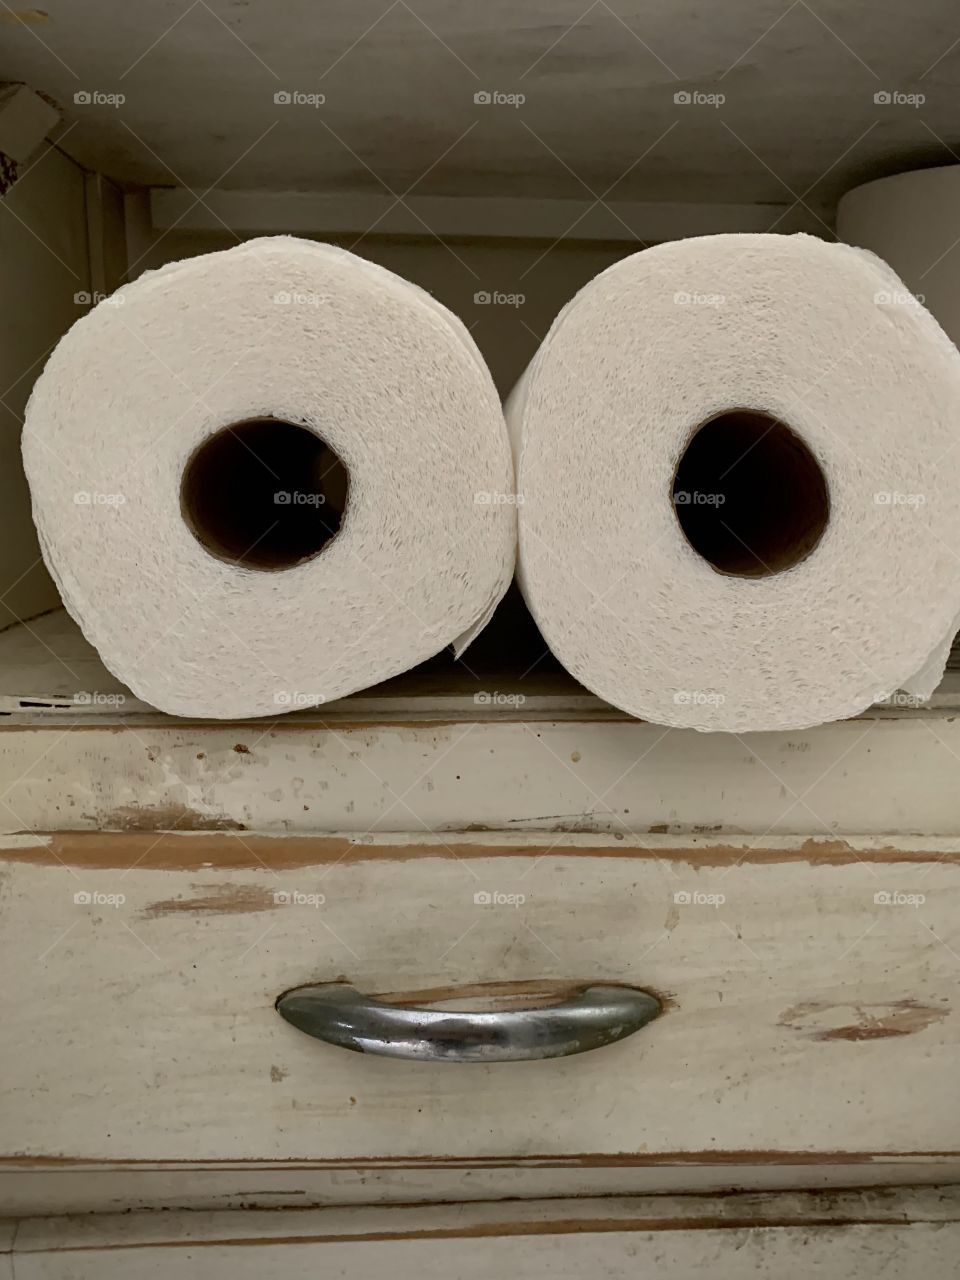 Paper towel rolls on a shelf